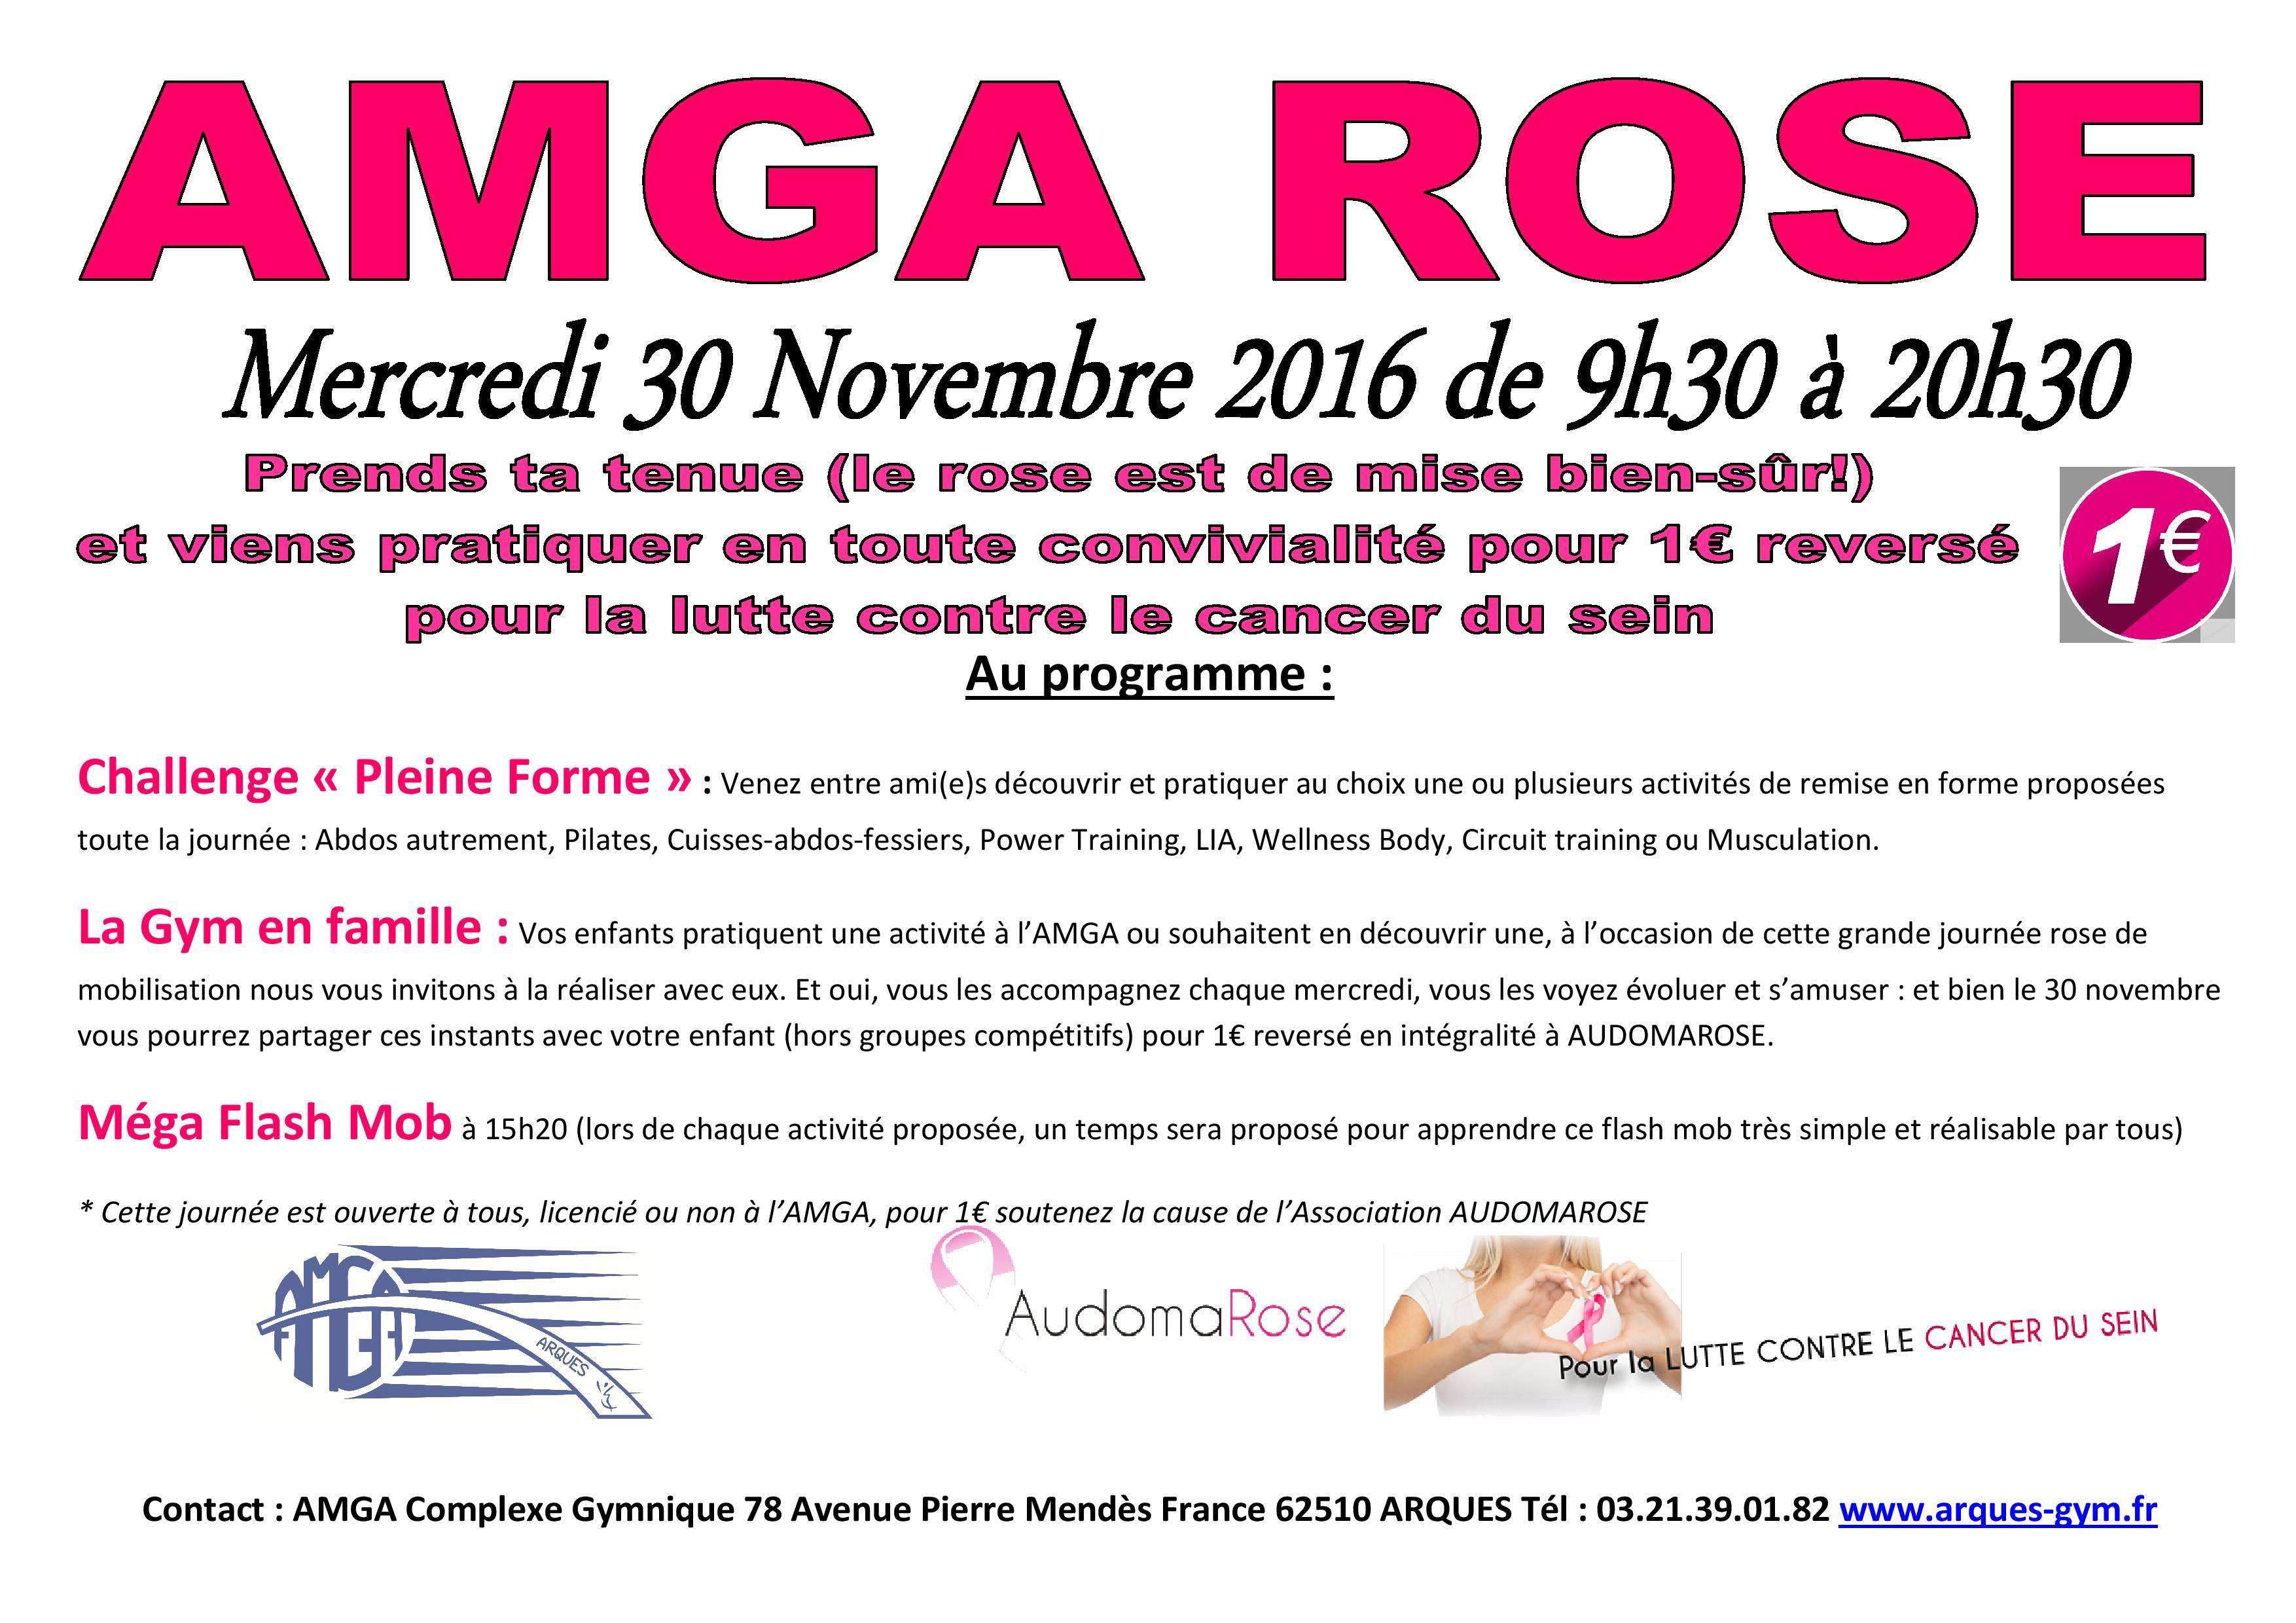 AMGA Rose pour la lutte contre le cancer du sein